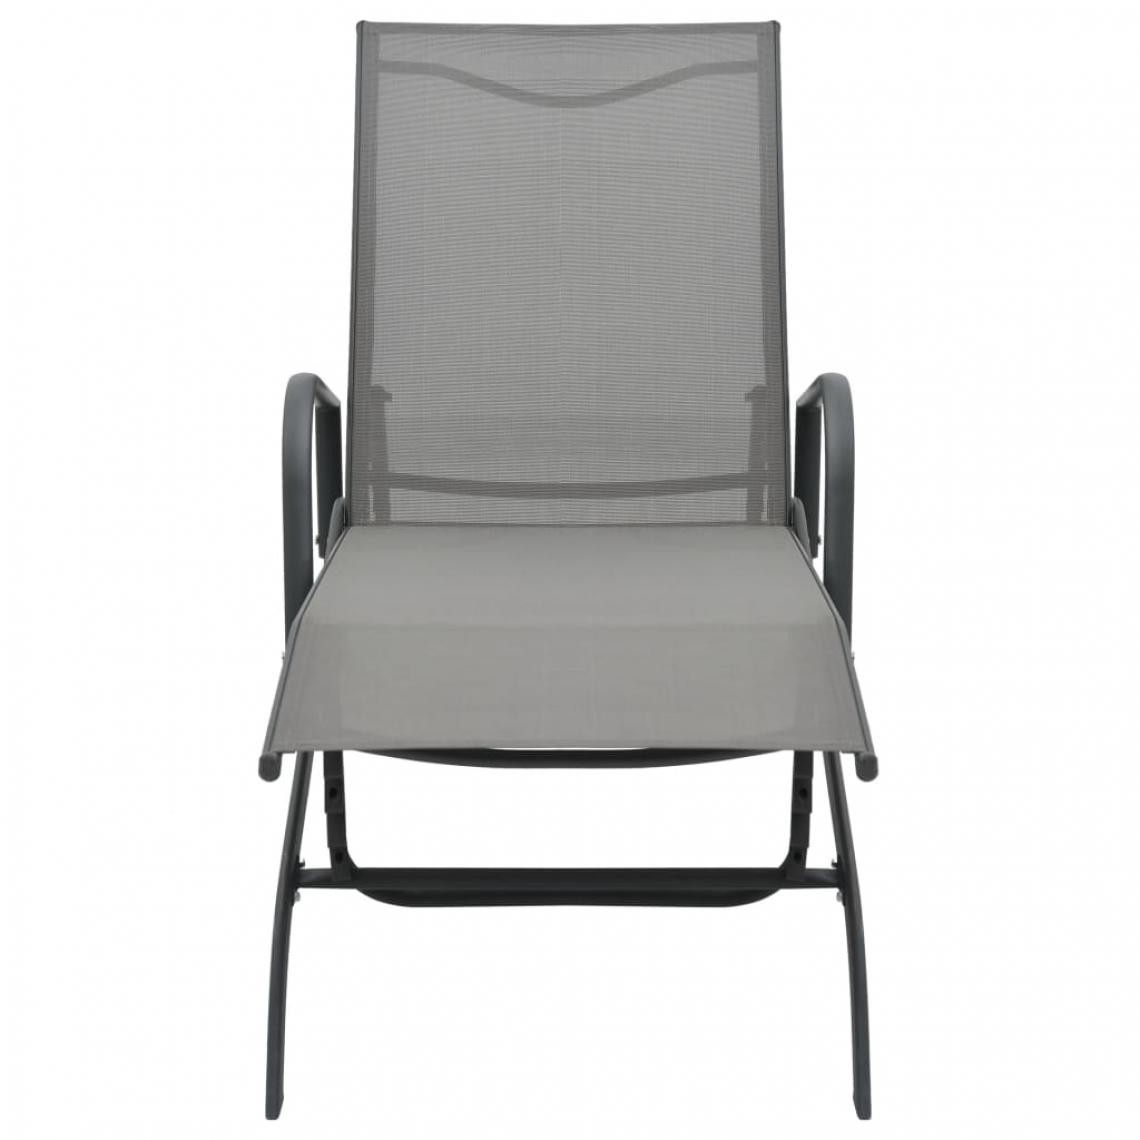 Icaverne - Icaverne - Bains de soleil reference Chaise longue Acier et textilène - Transats, chaises longues